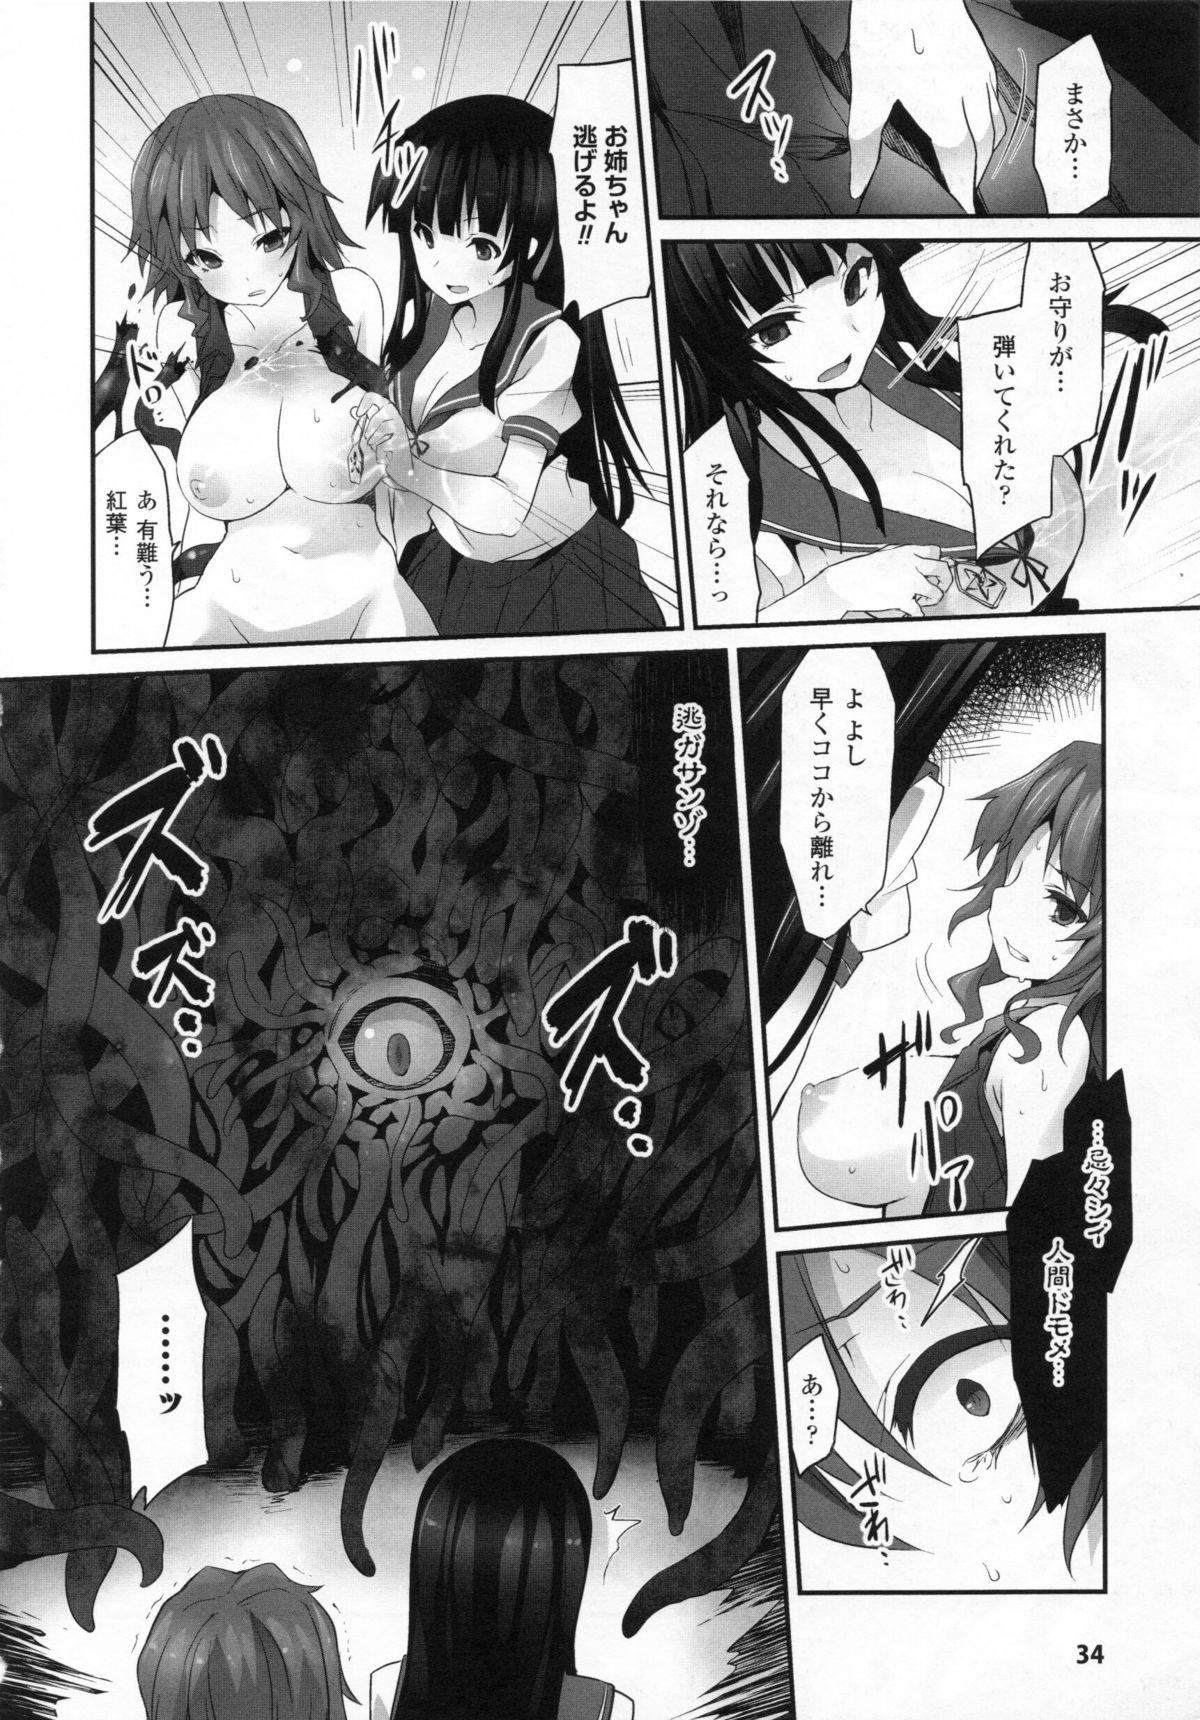 2D Dream Comic Magazine Moshimo Gendai Nippon ni Shokushu ga Arawaretara 33